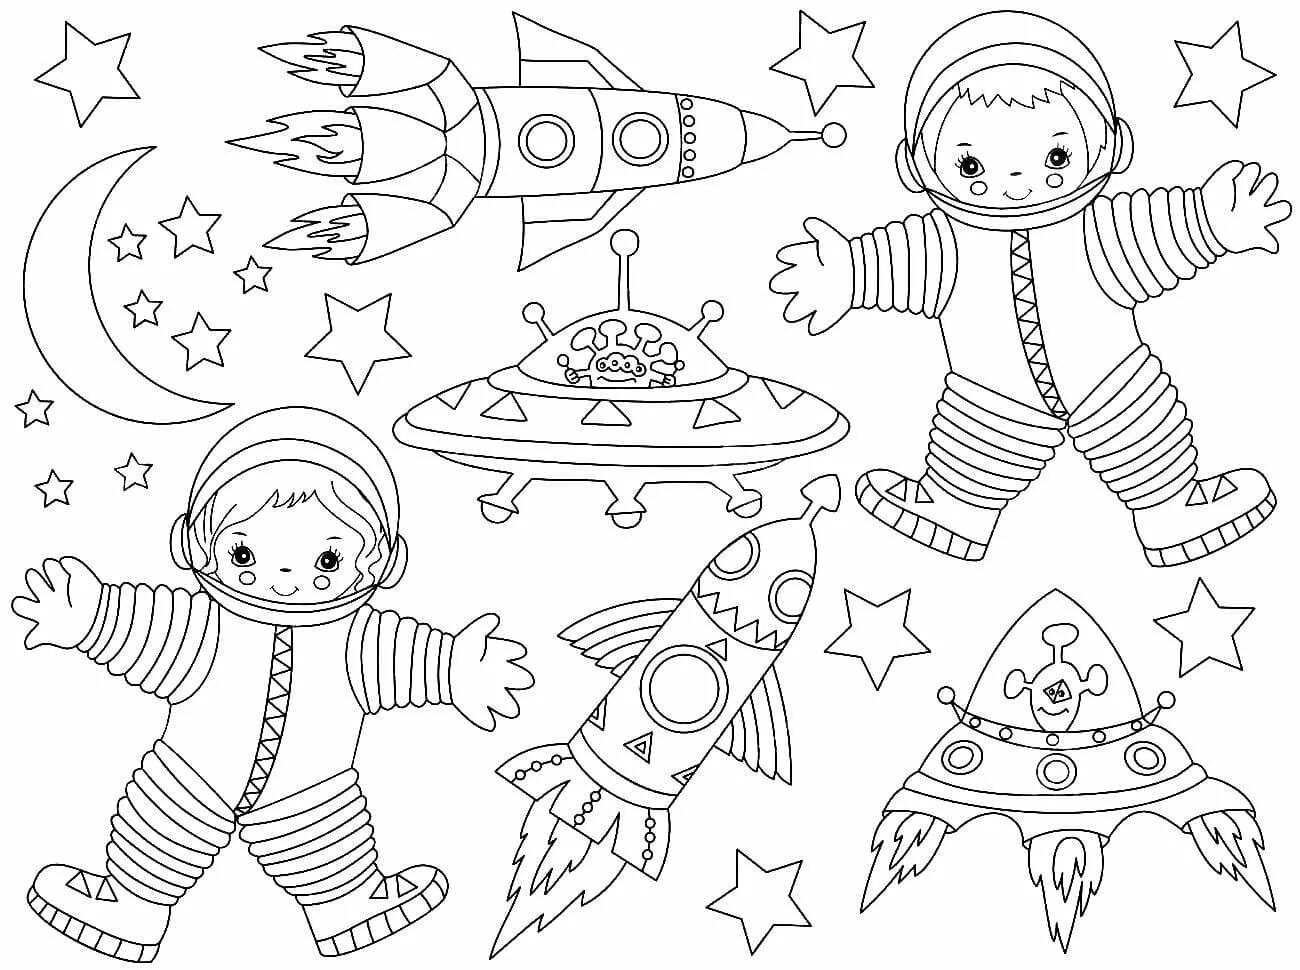 Раскраска космос для детей 3 лет. Космос раскраска для детей. Раскраска. В космосе. Раскраска для малышей. Космос. Детские раскраски космос.